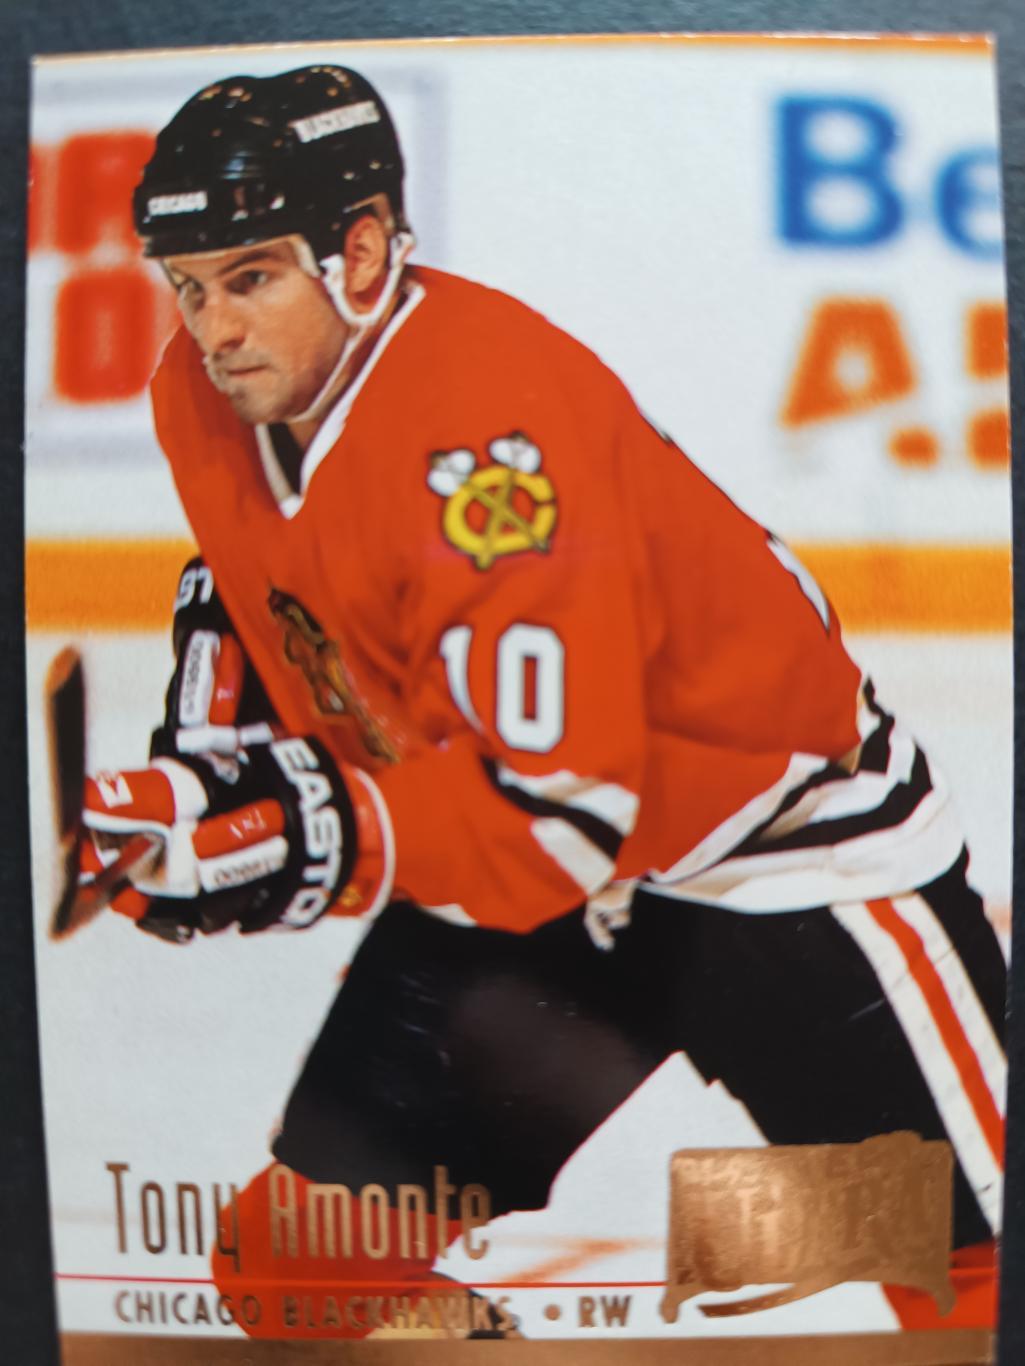 ХОККЕЙ КАРТОЧКА НХЛ FLEER ULTRA 1994-95 NHL TONY AMONTE BLACK HAWKS #273 2